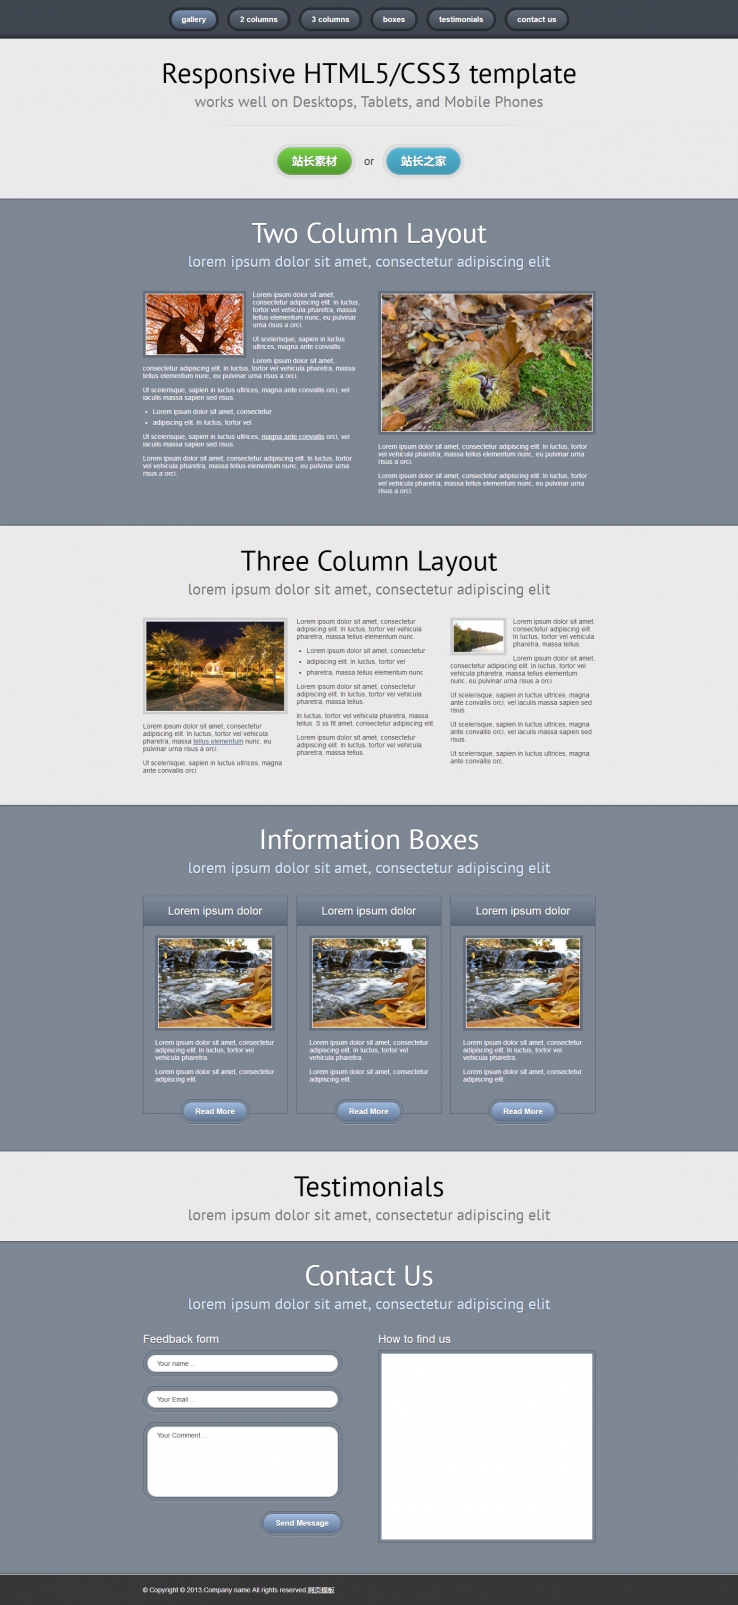 灰色宽屏风格的HTML5+CSS3单页模板